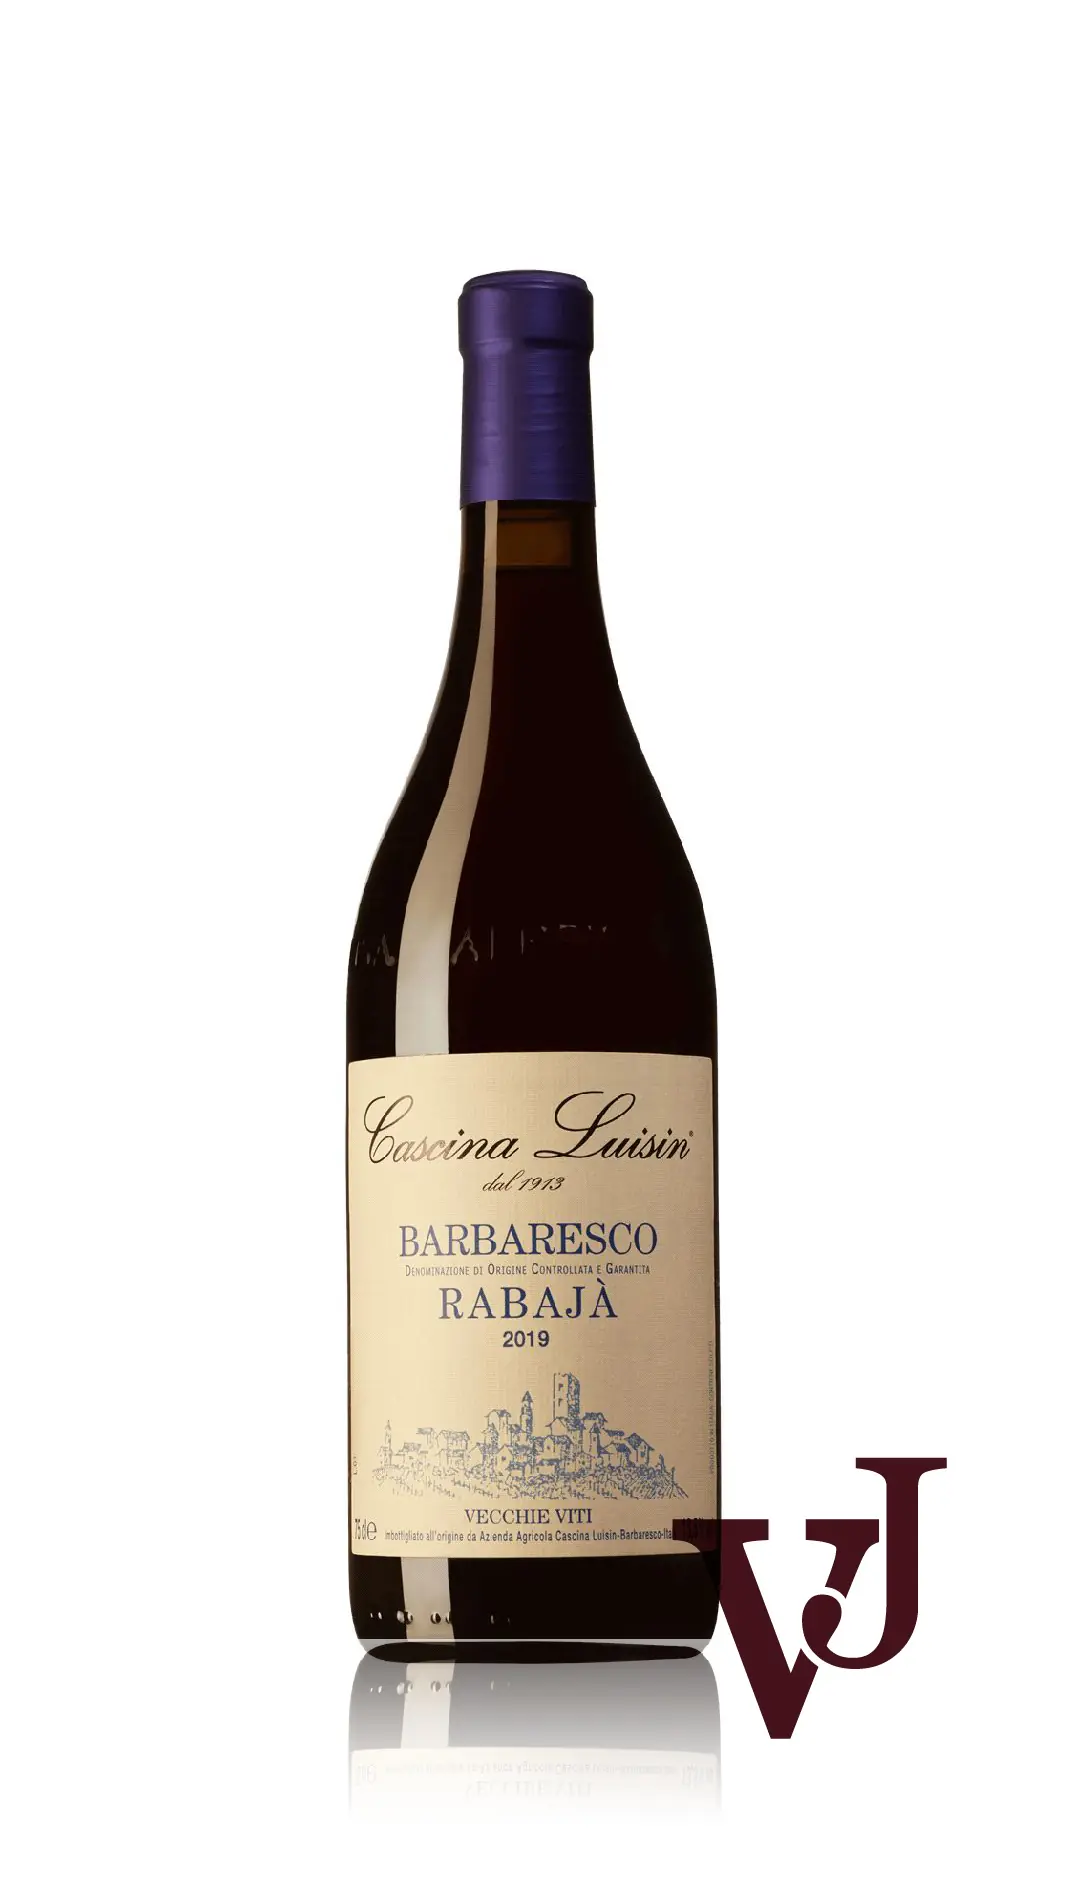 Vitt Vin - Barbaresco Rabajà Cascina Luisin 2019 artikel nummer 9477101 från producenten Cascina Luisin från området Italien - Vinjournalen.se